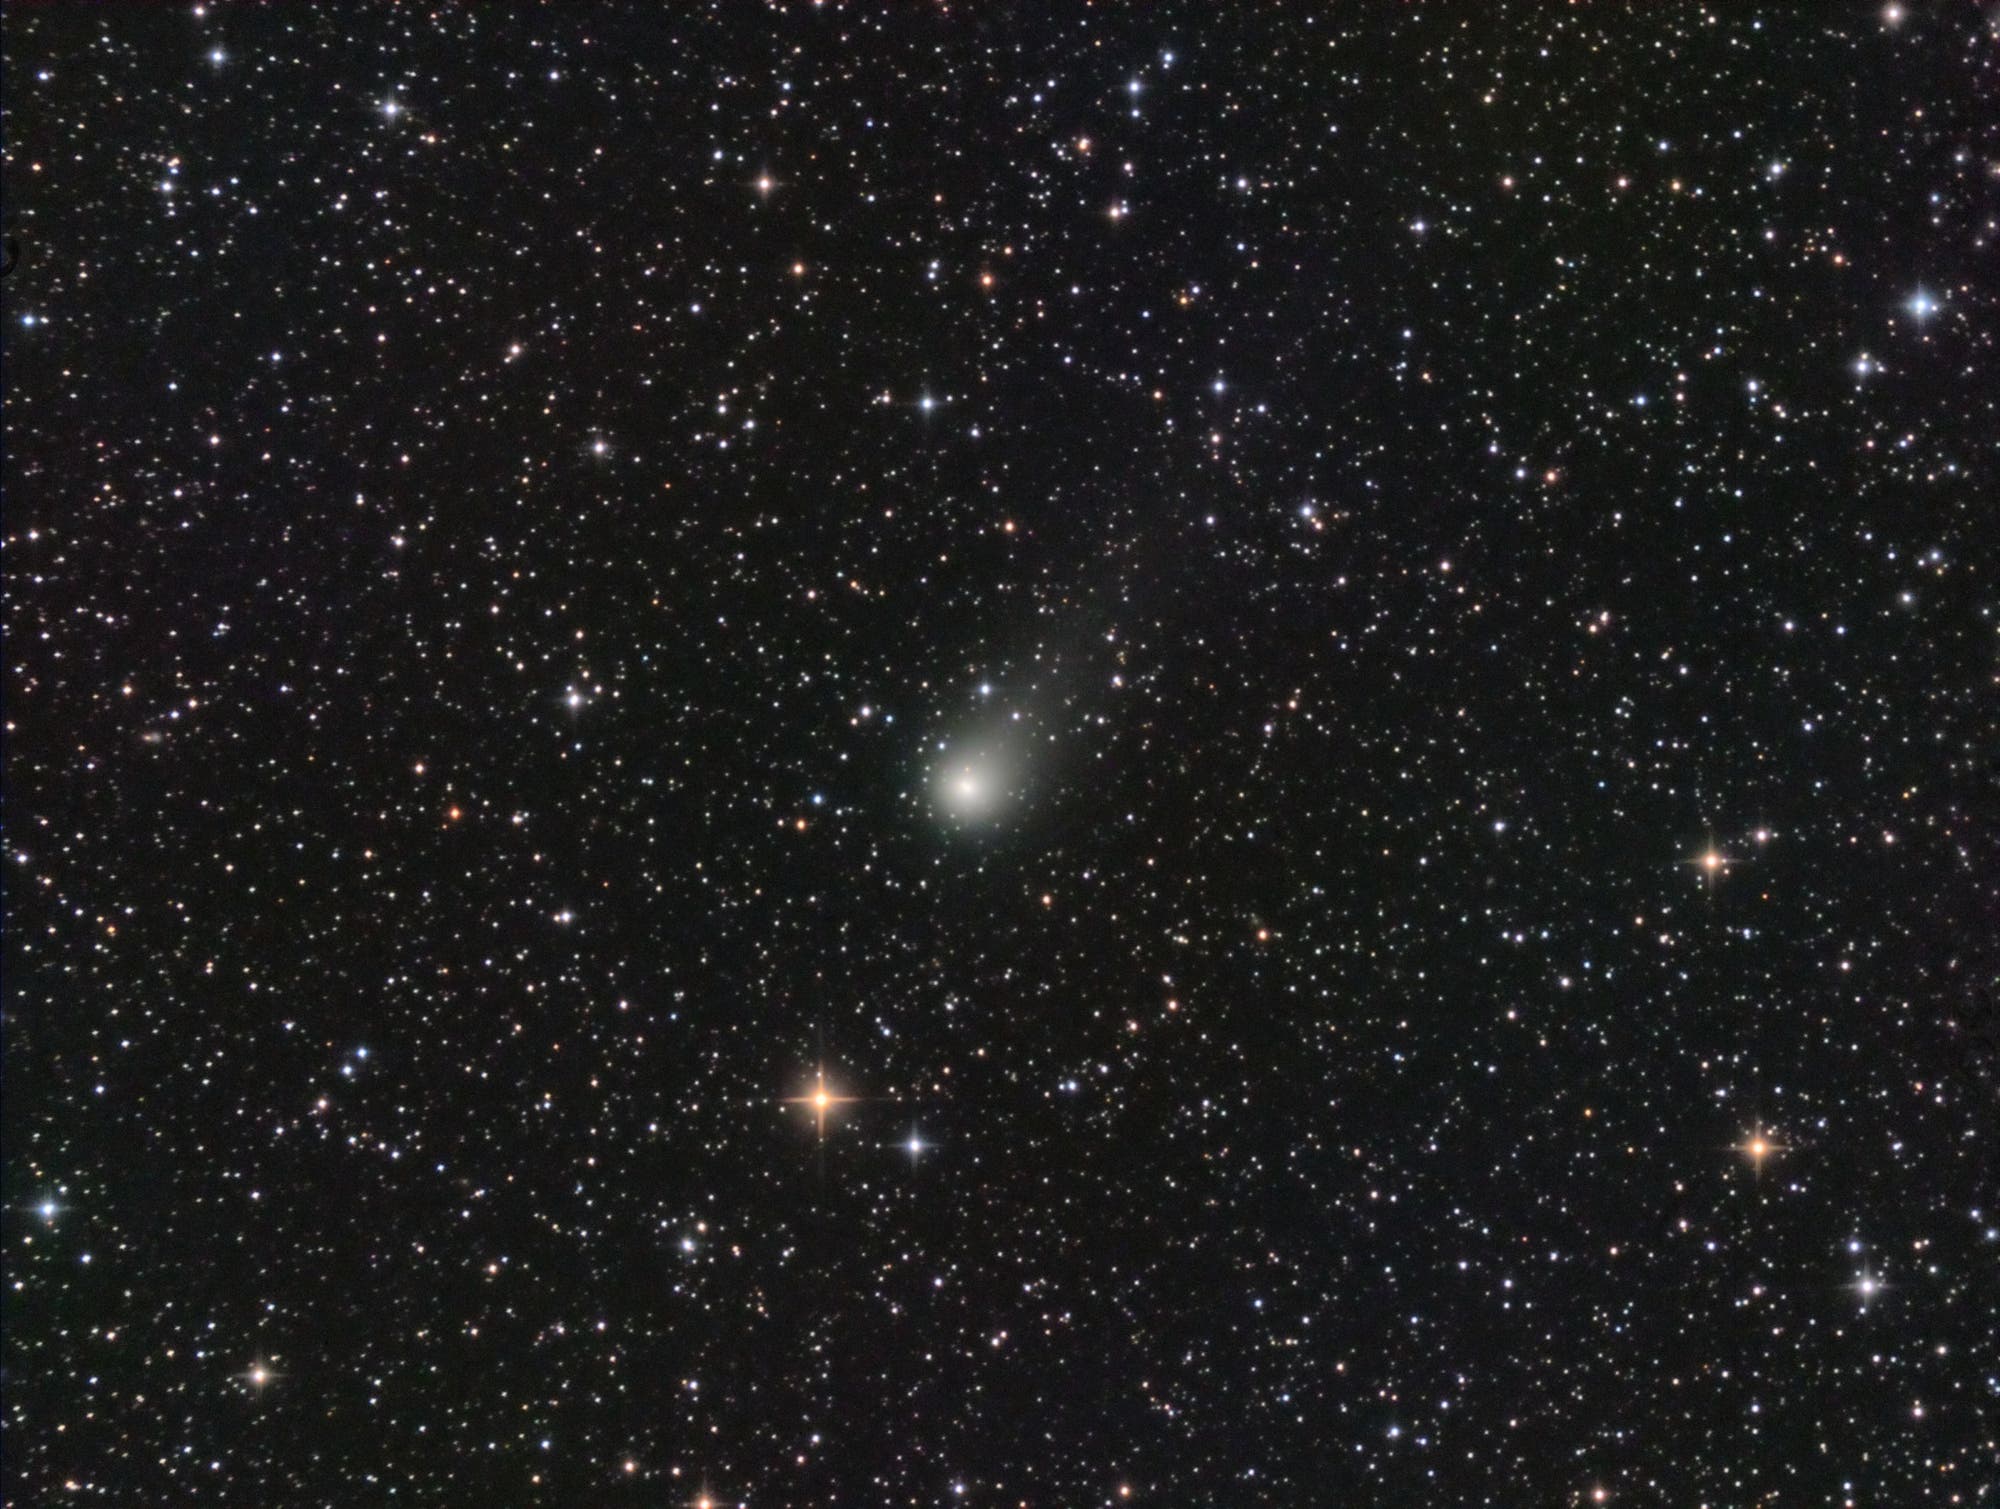 Comet C-2019 L3 ATLAS at perihelion